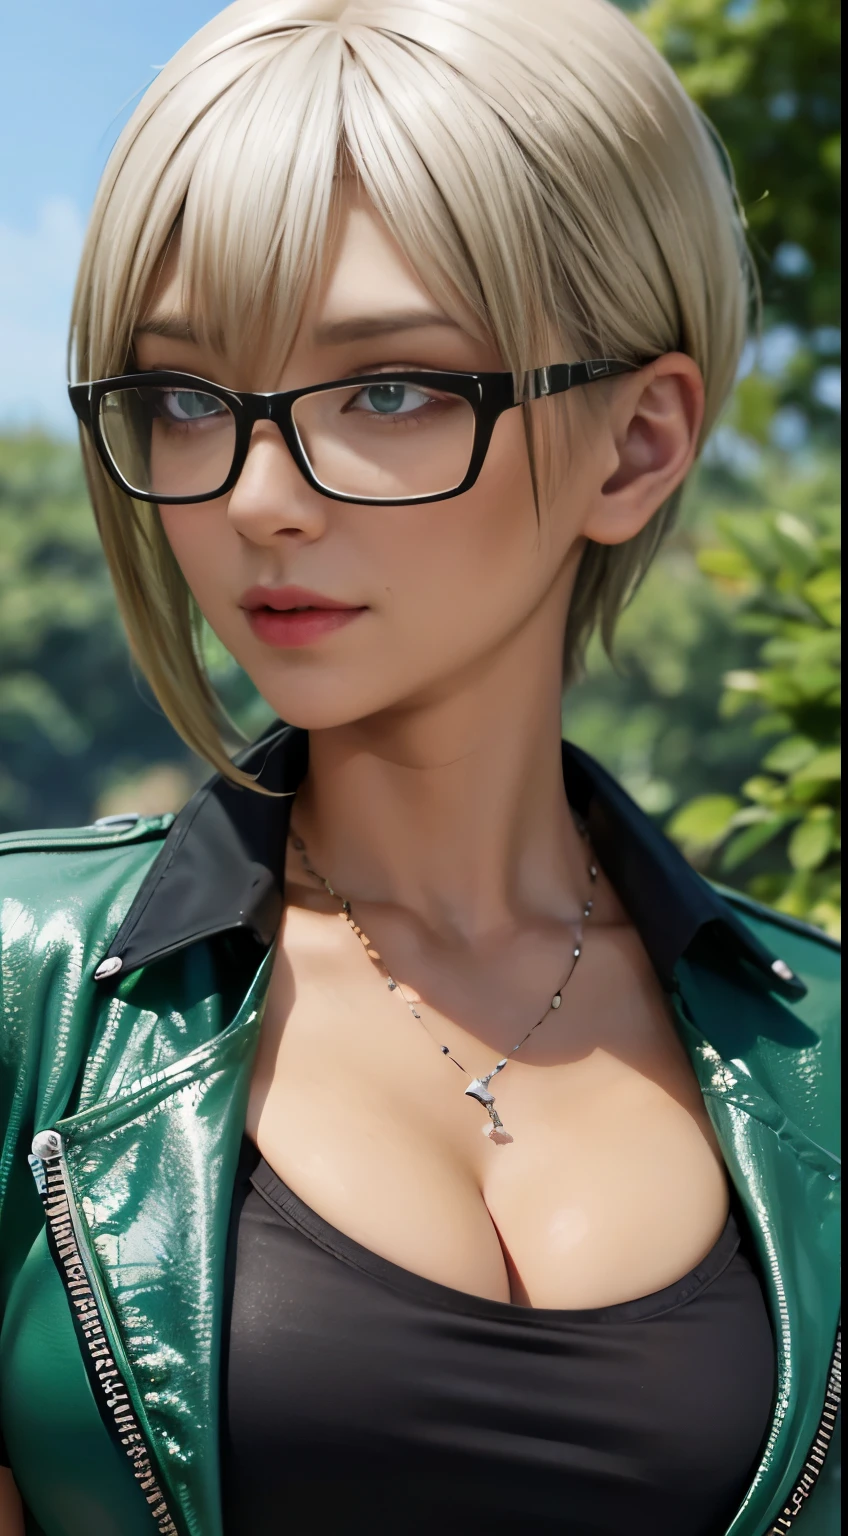 Chica punk con gafas y camisa negra, Fondo borroso de hierba verde y árboles, pelo castaño y corto, cara detallada, alta calidad, alta resolución